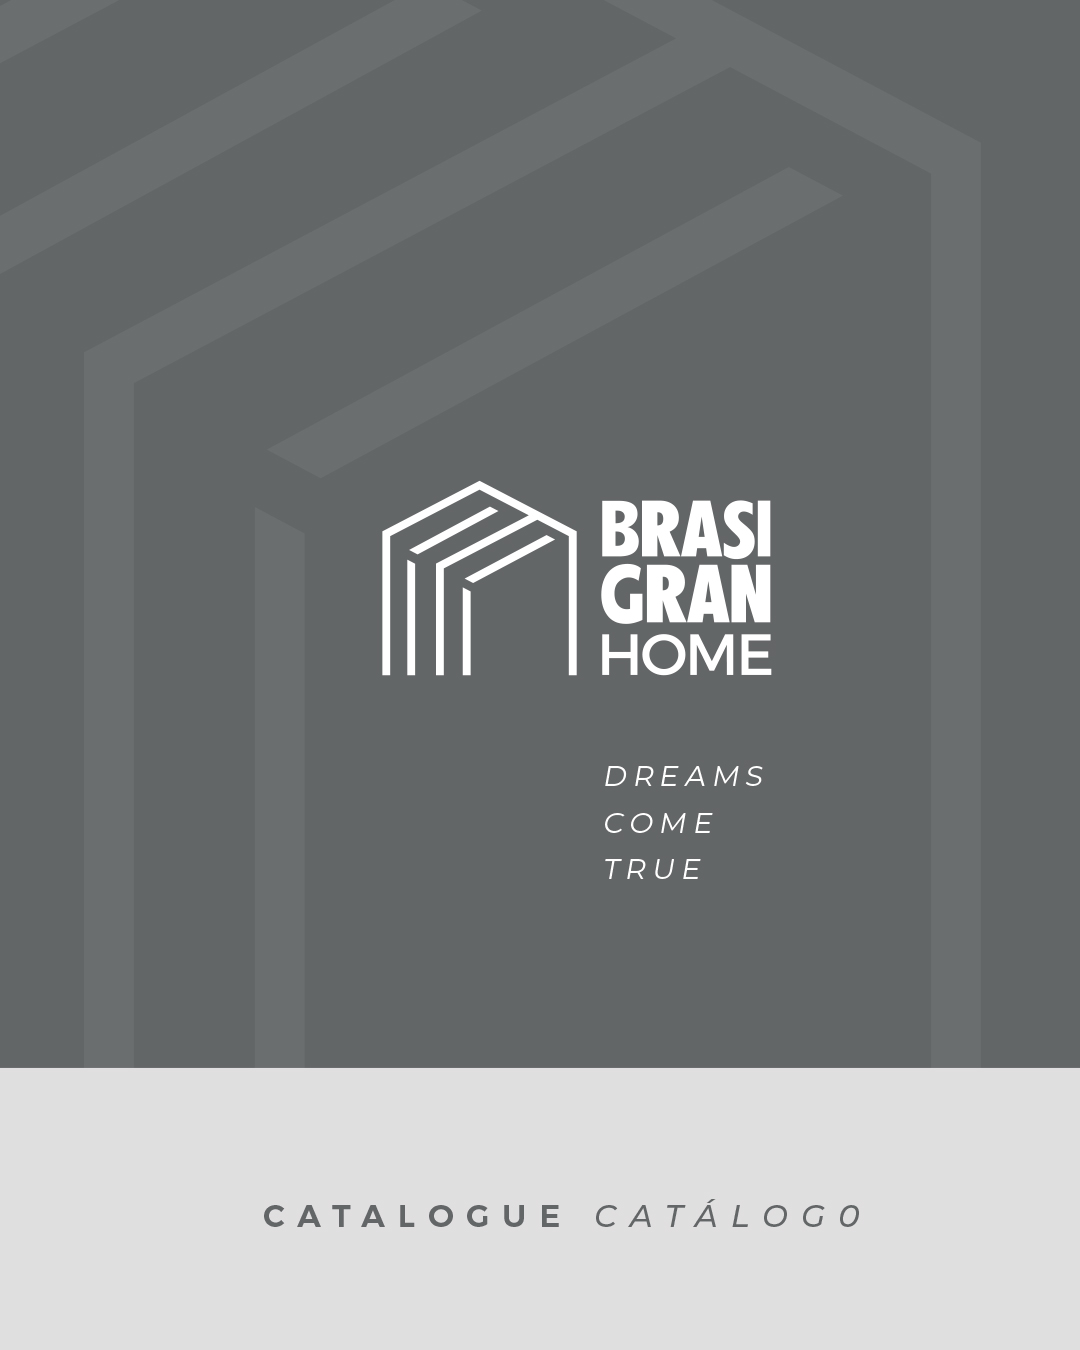 Catálogo Brasigran Home